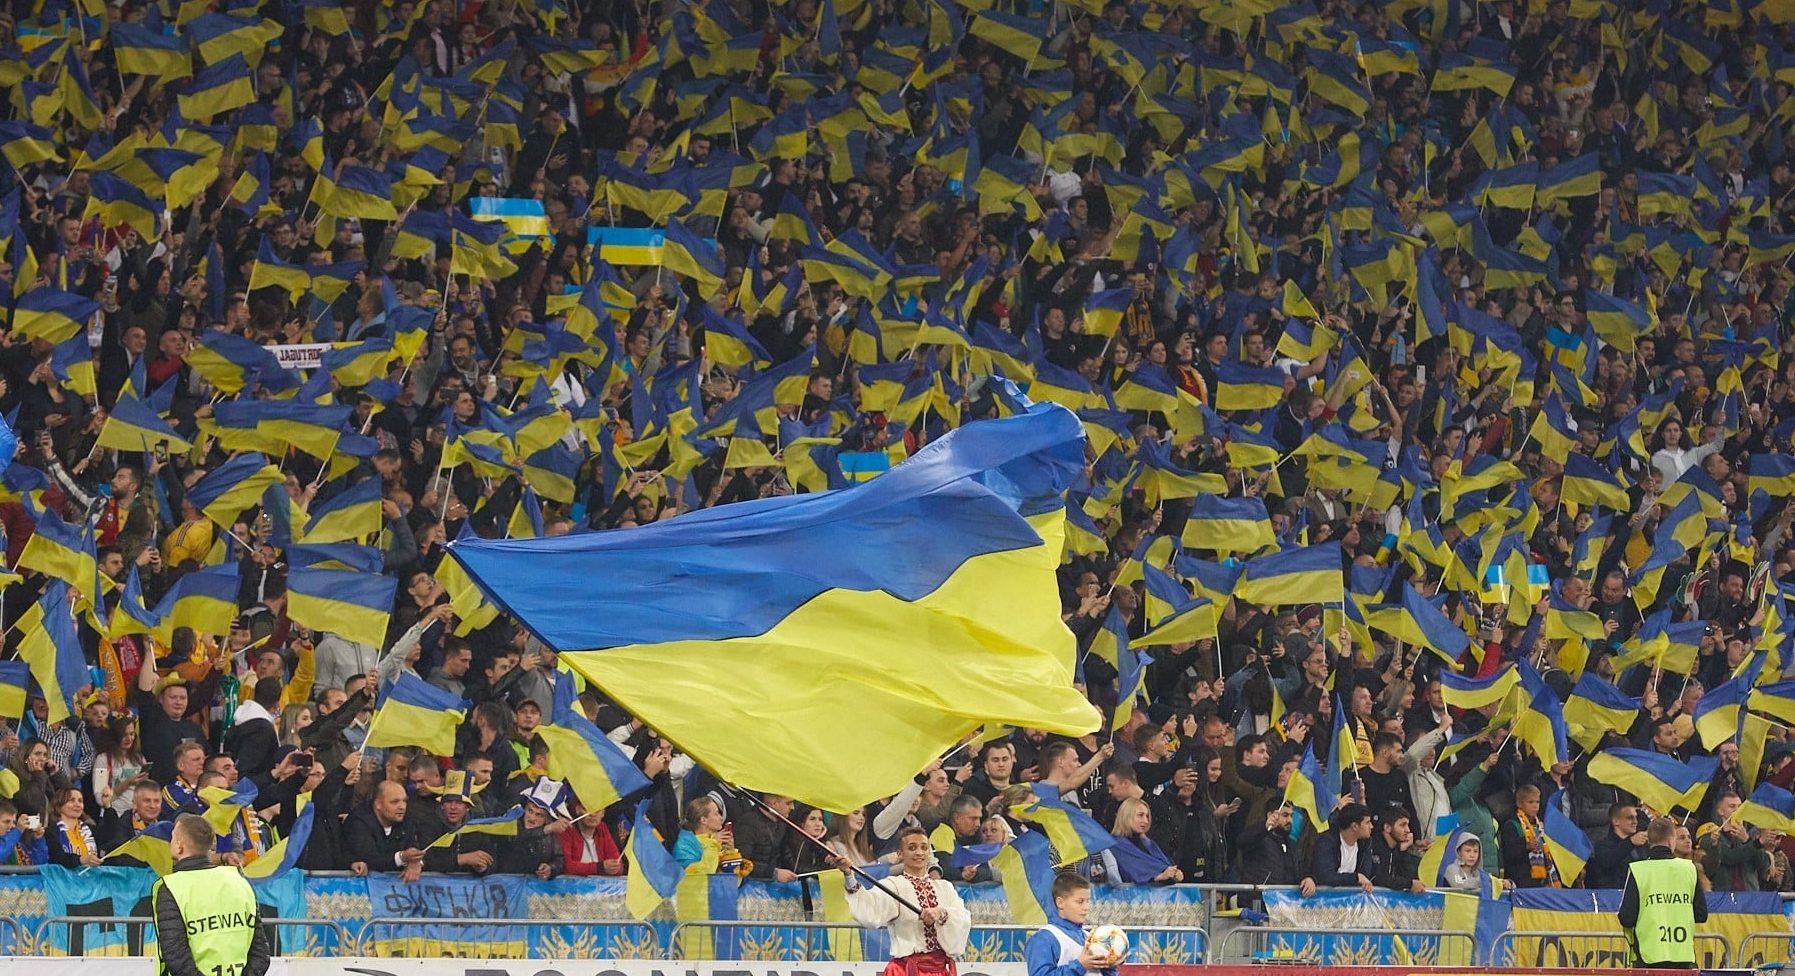 УАФ утвердила официальный футбольный статус лозунгов «Слава Украине!» и «Героям слава!» — Павелко